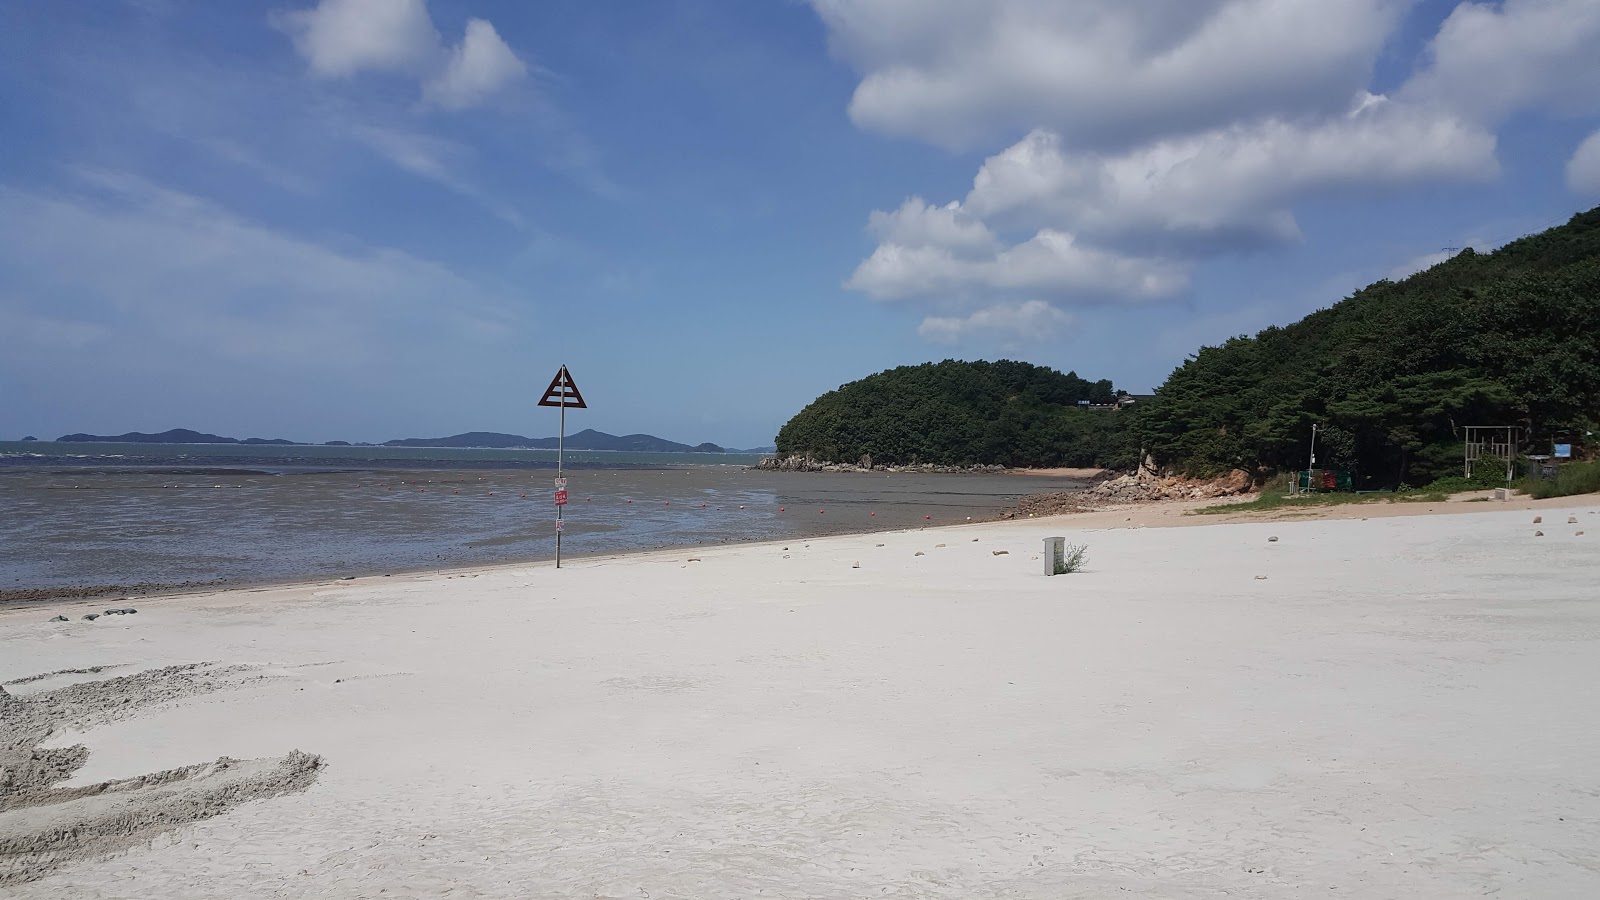 Foto de Minmeoru Beach com alto nível de limpeza